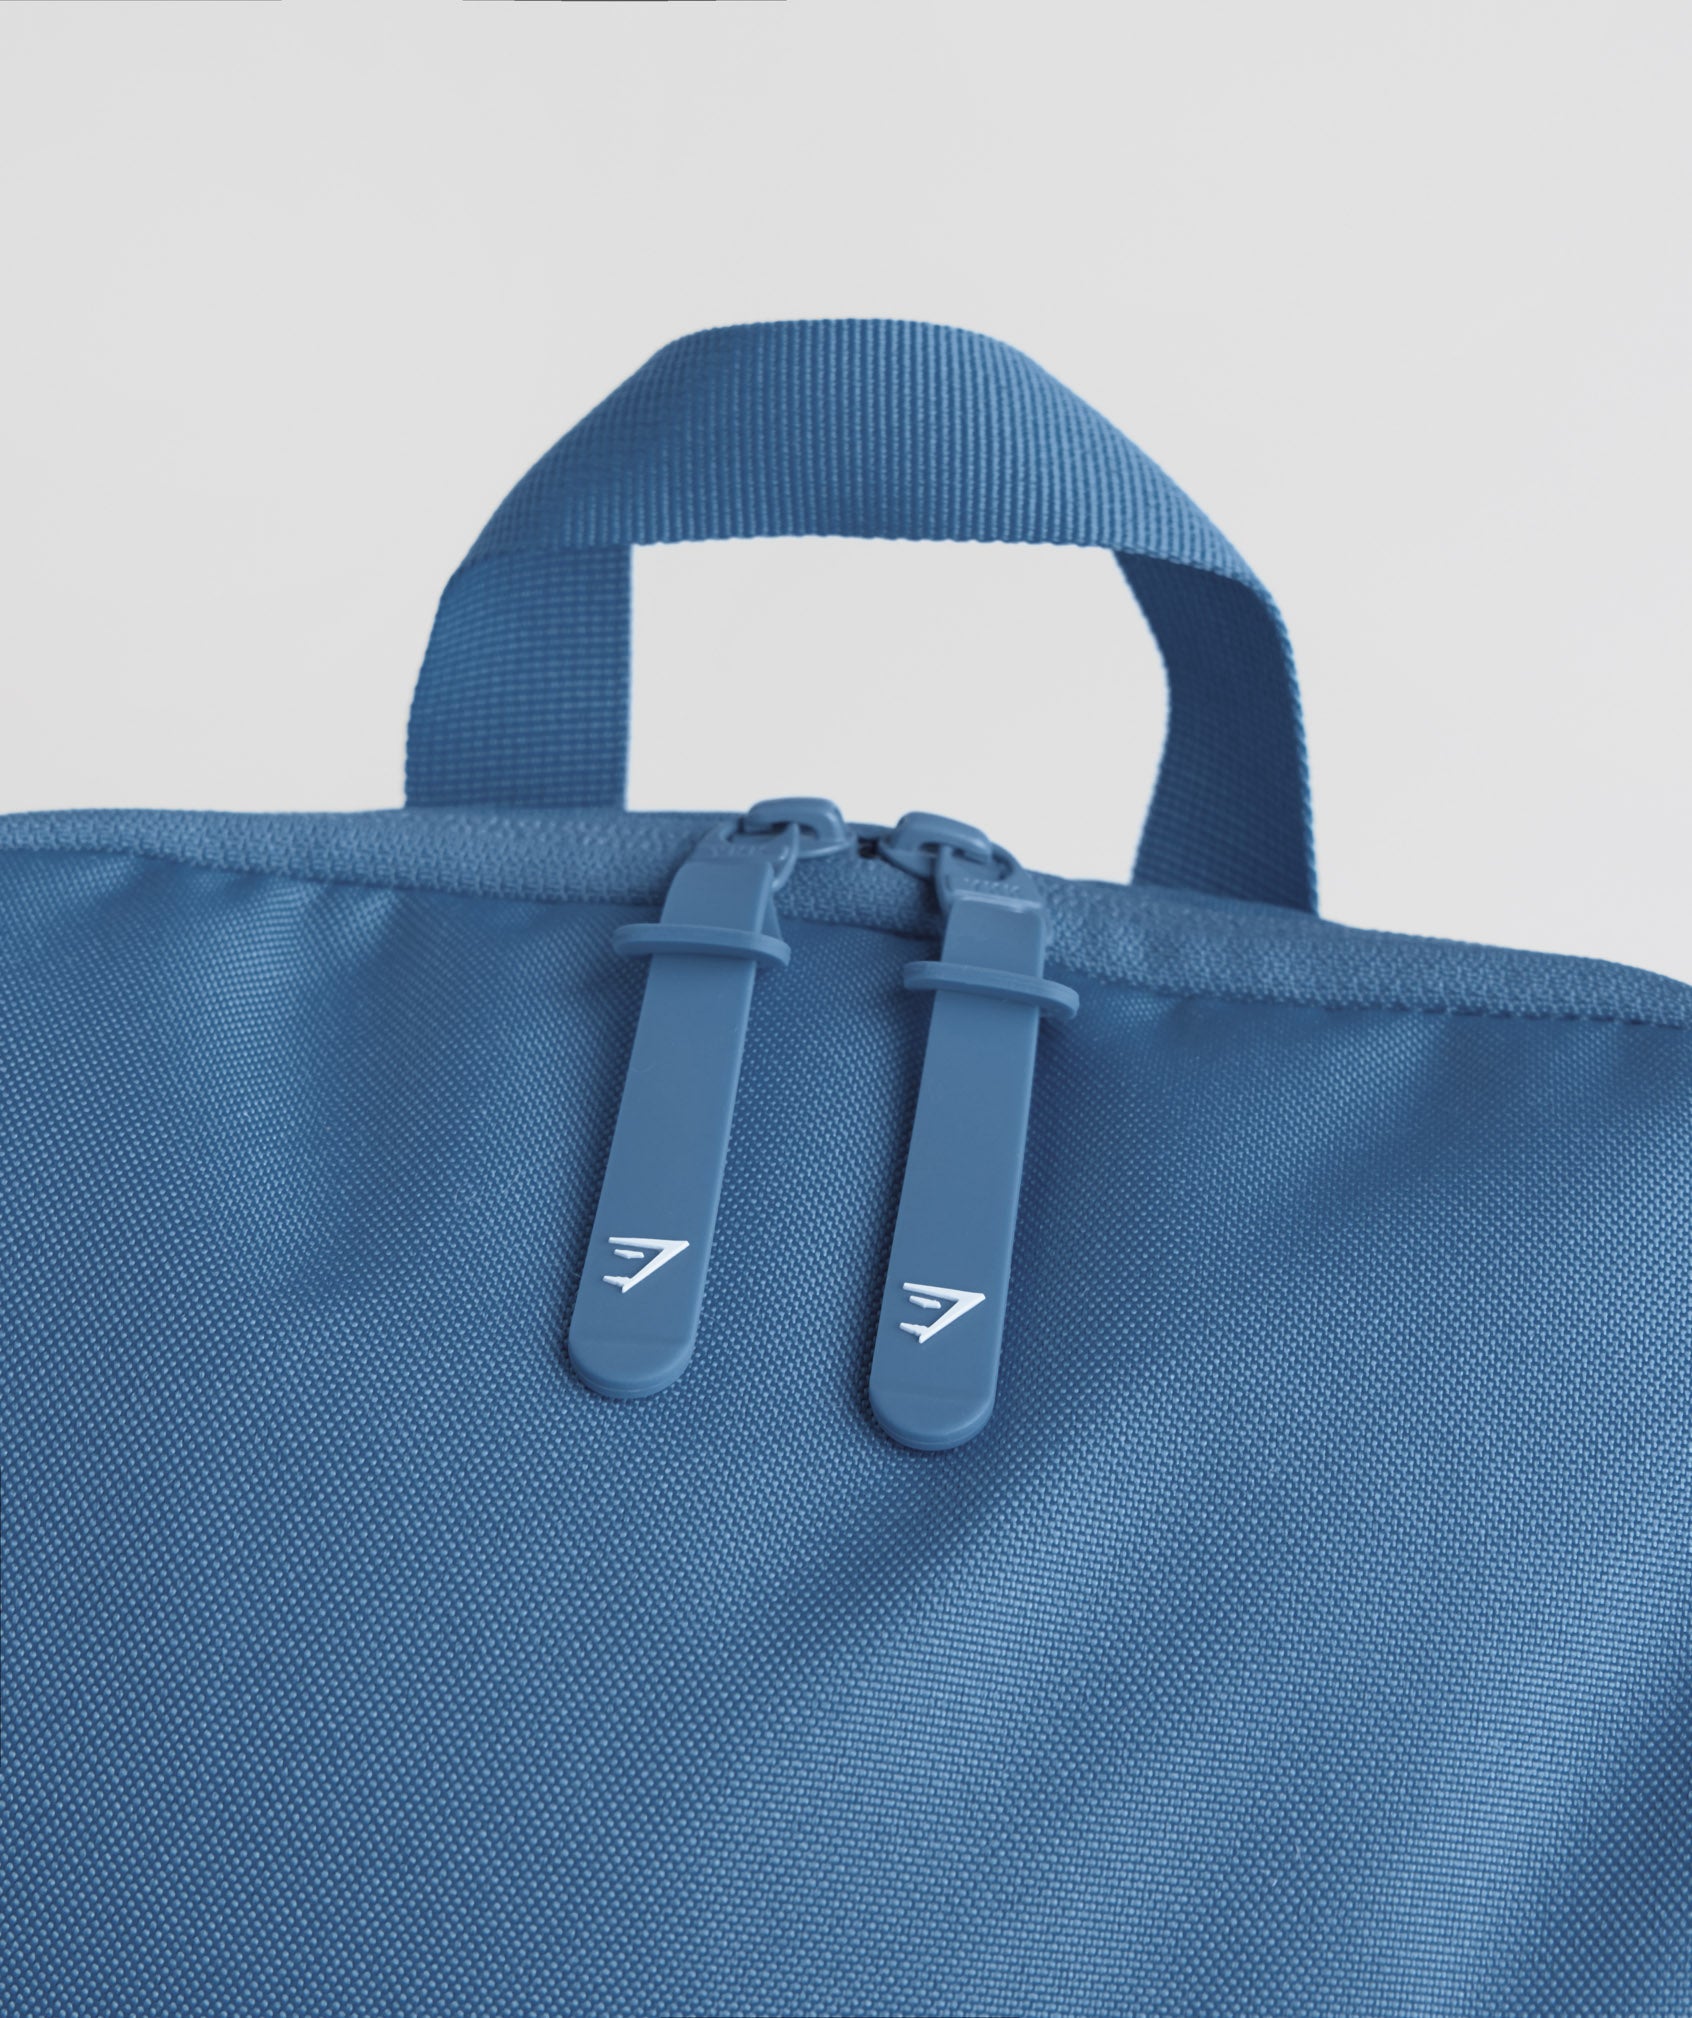 Sharkhead Backpack in Denim Blue